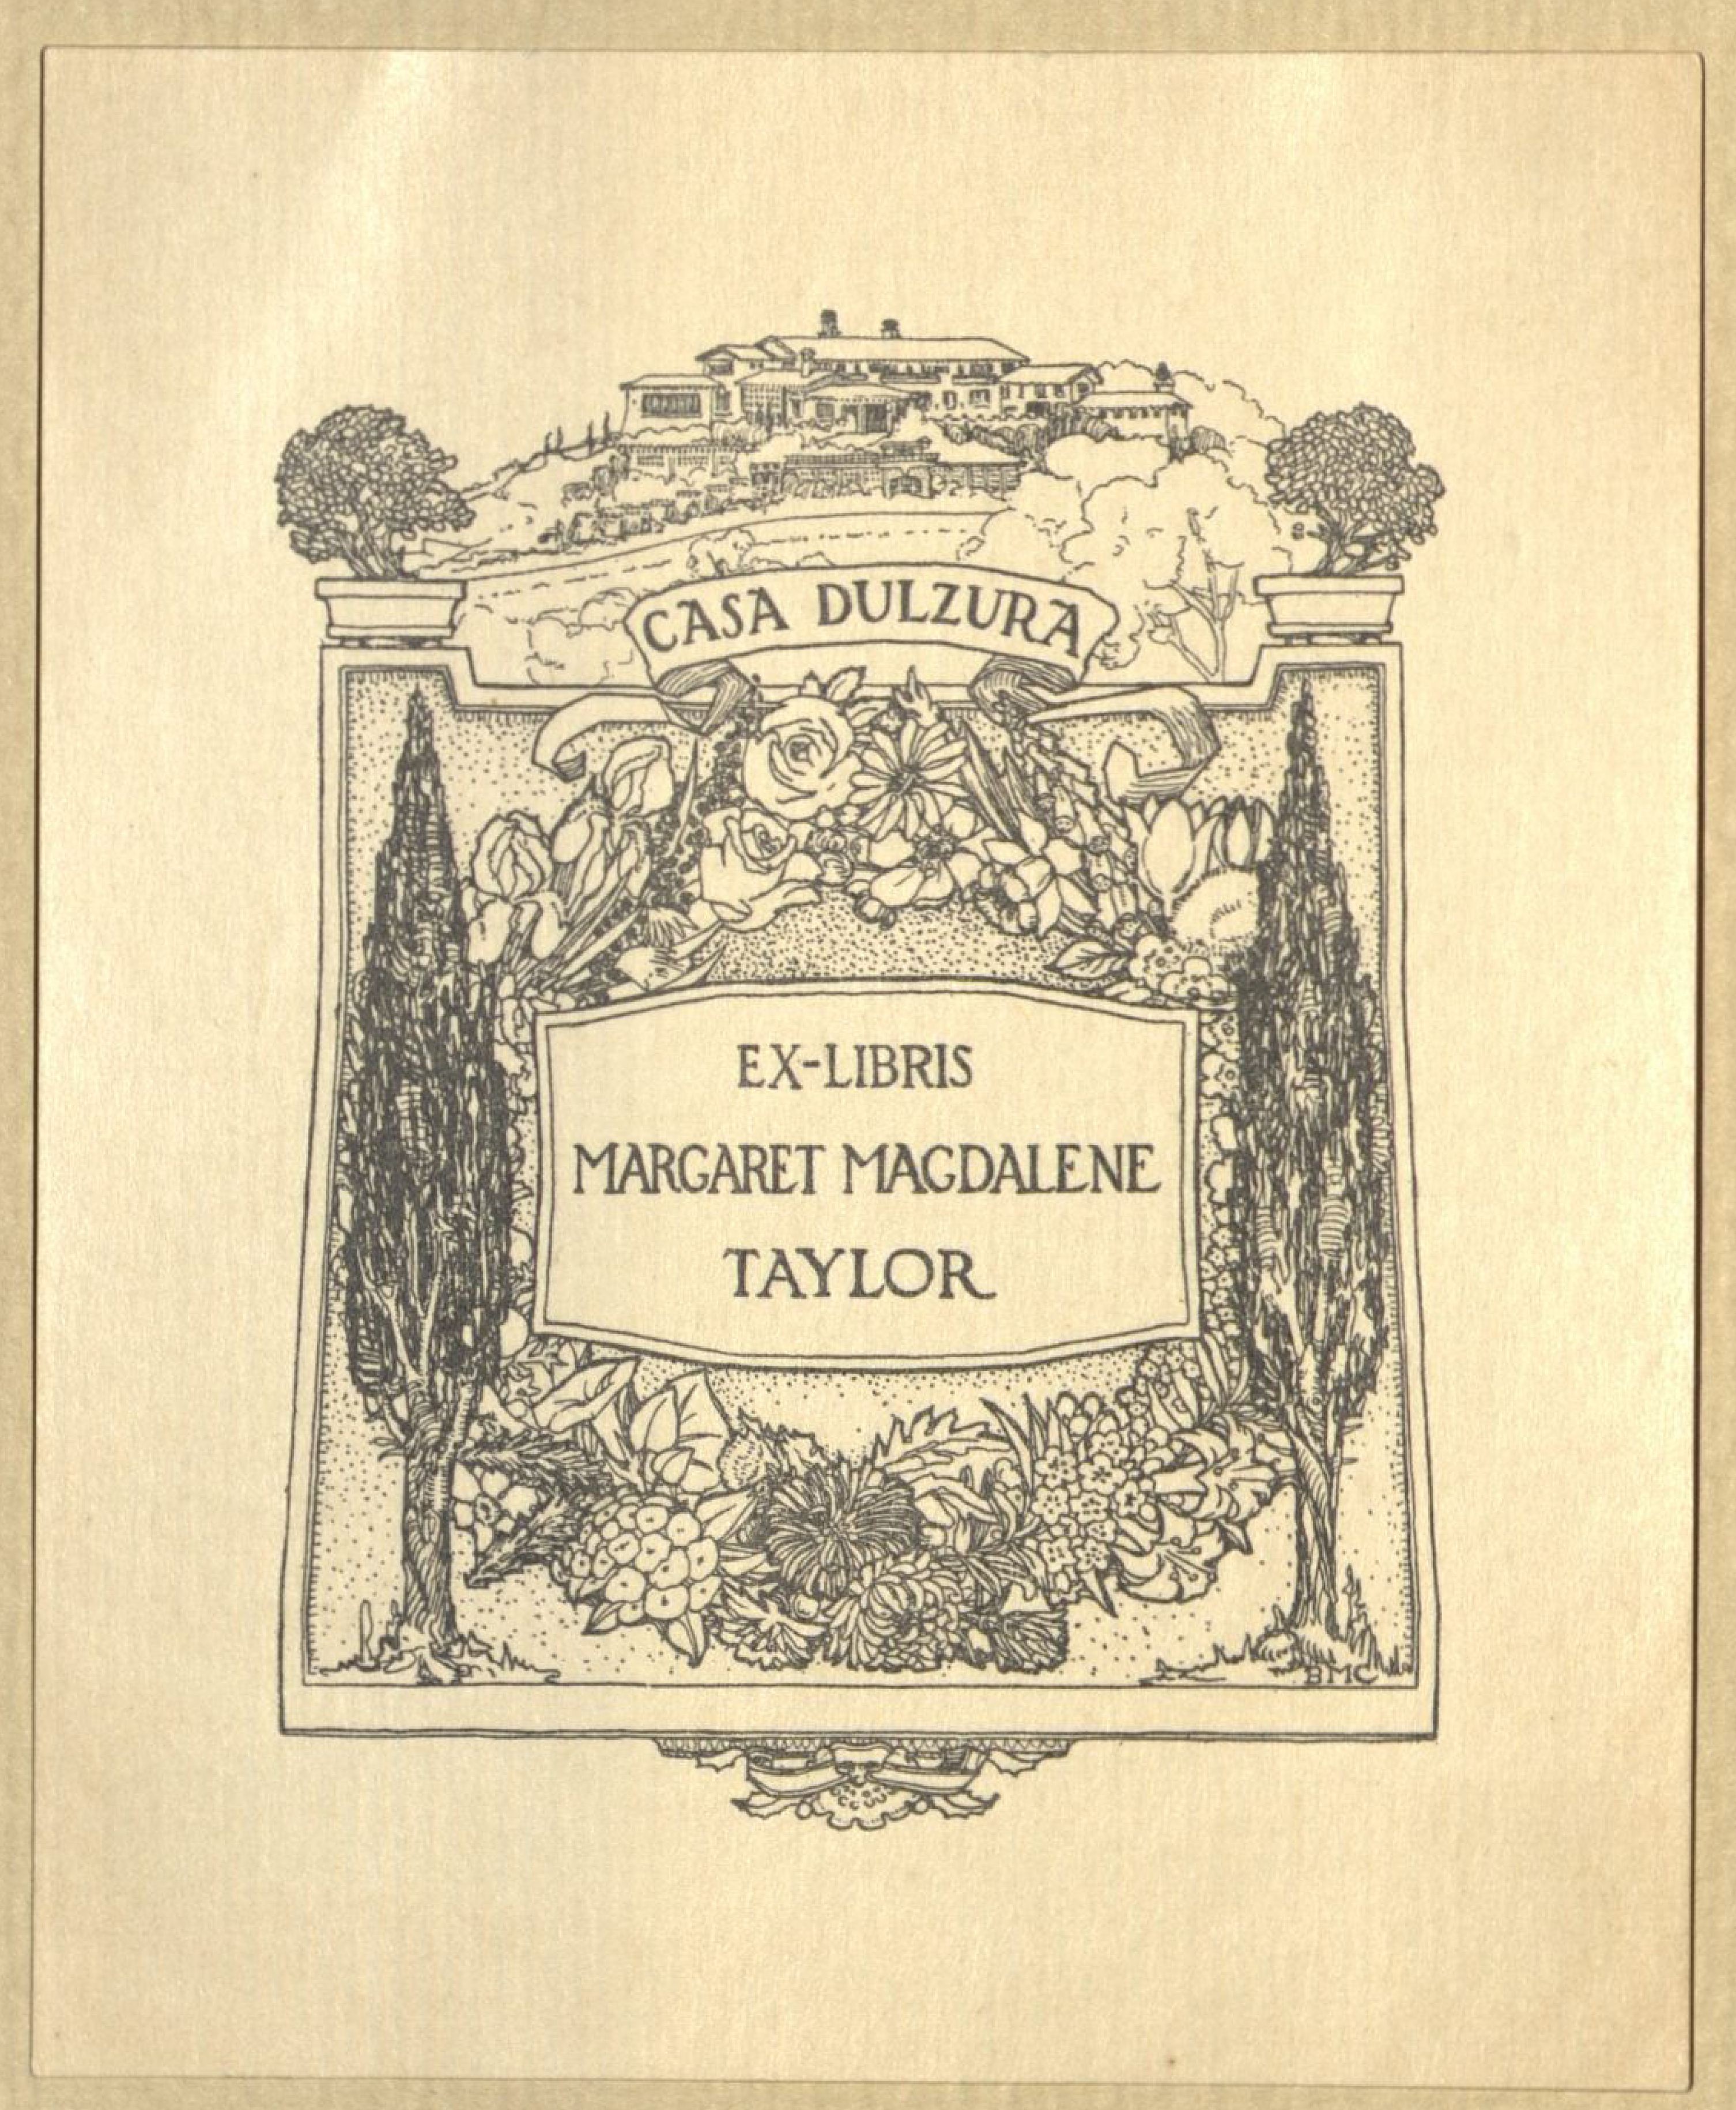 Bookplate of Margaret Magdalene Taylor.